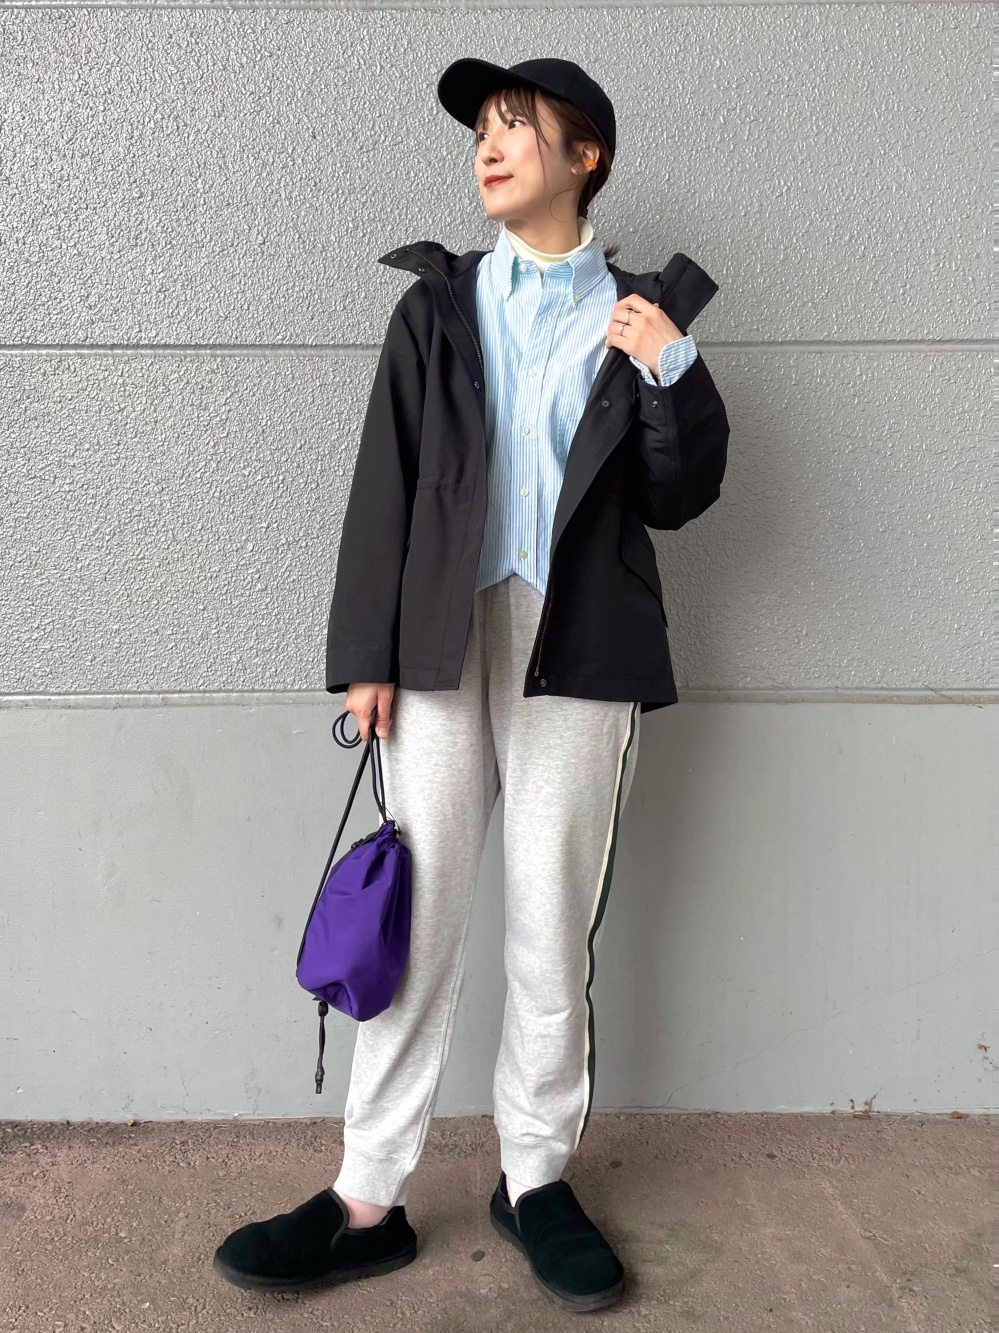 「コットンボリュームスリーブワンピース（半袖）、UVカットツイルキャップ」の着用コーディネート| ユニクロ